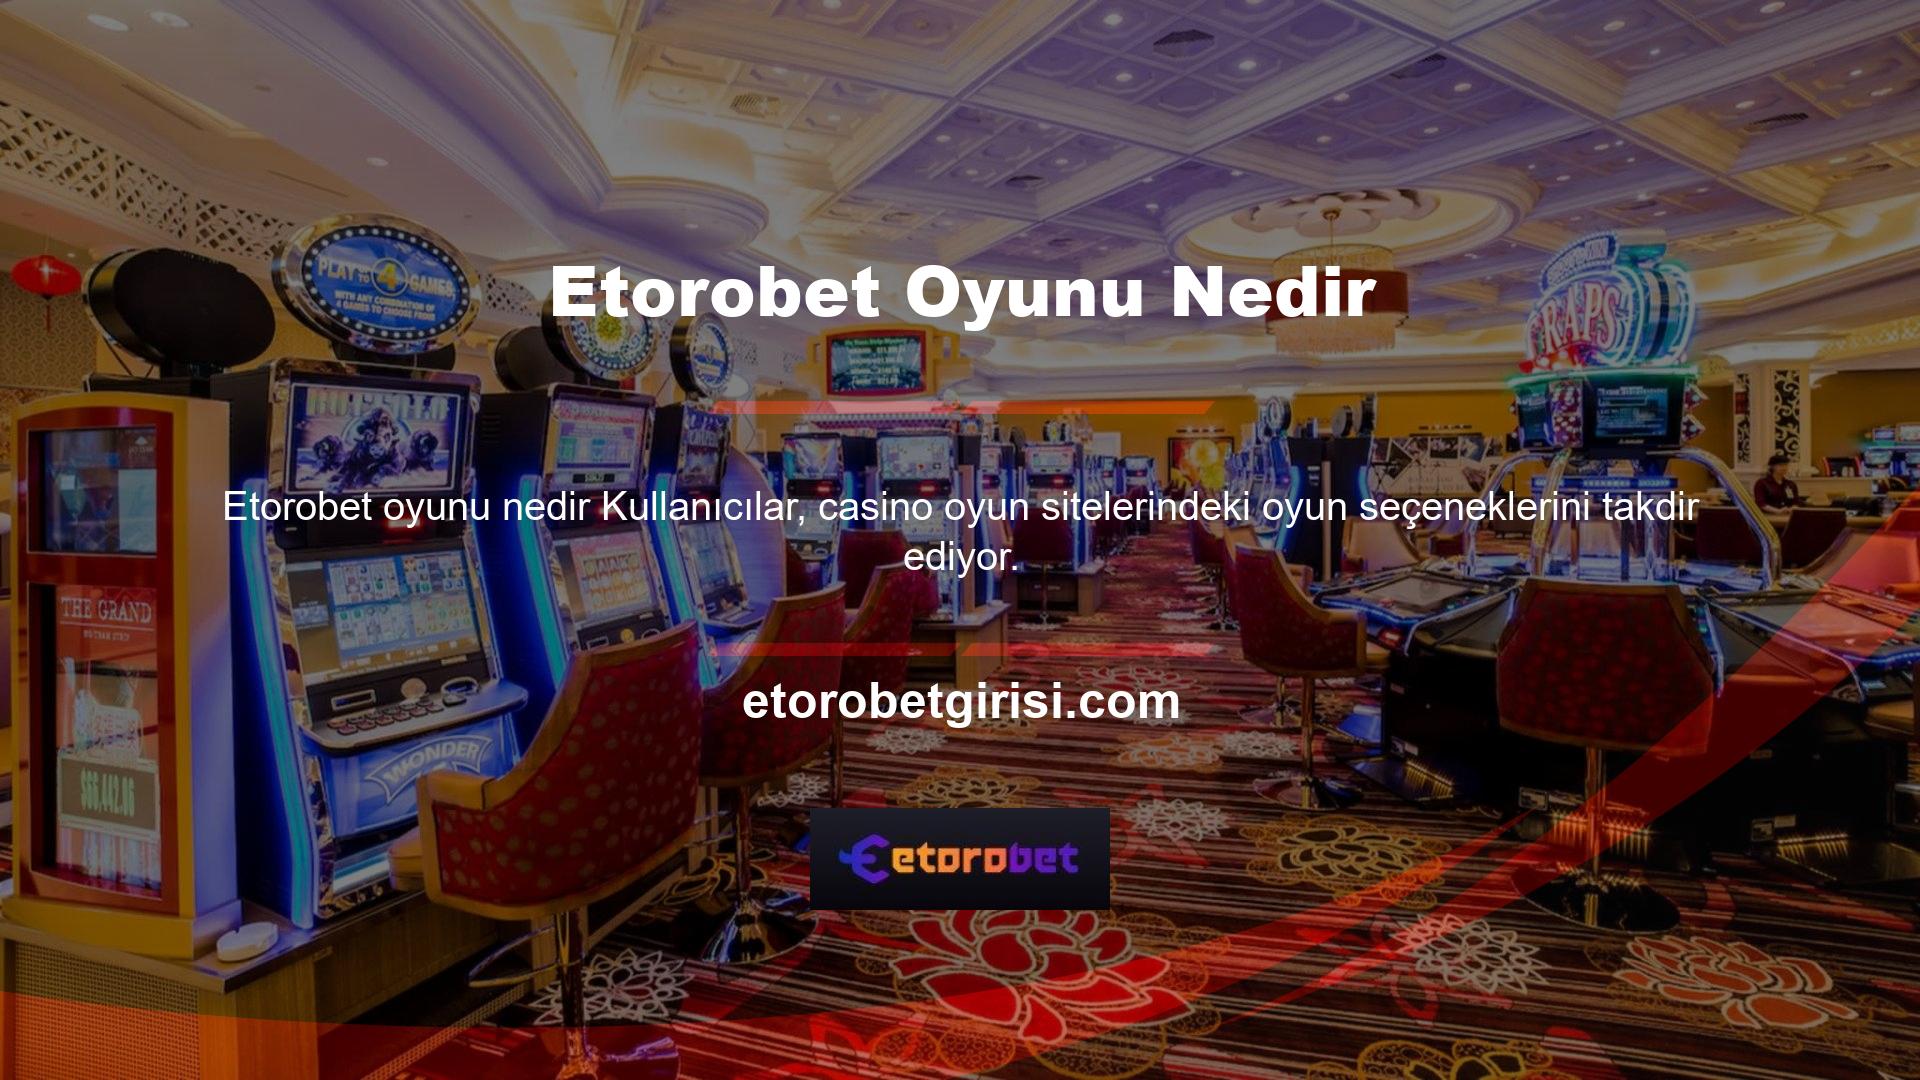 Etorobet oyunu nedir bir oyun sağlayıcı ile kullanıcılar yeni oyunlar keşfedebilmeli ve karlı oyunlara yatırım yapabilmelidir